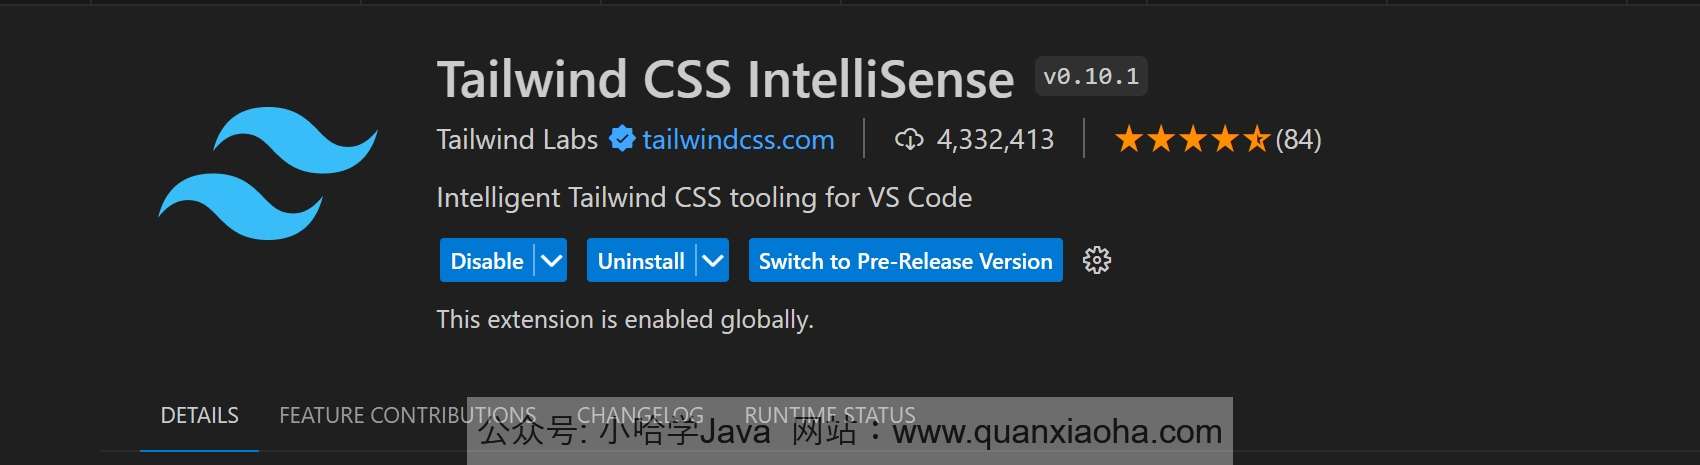 Tailwind CSS IntelliSense